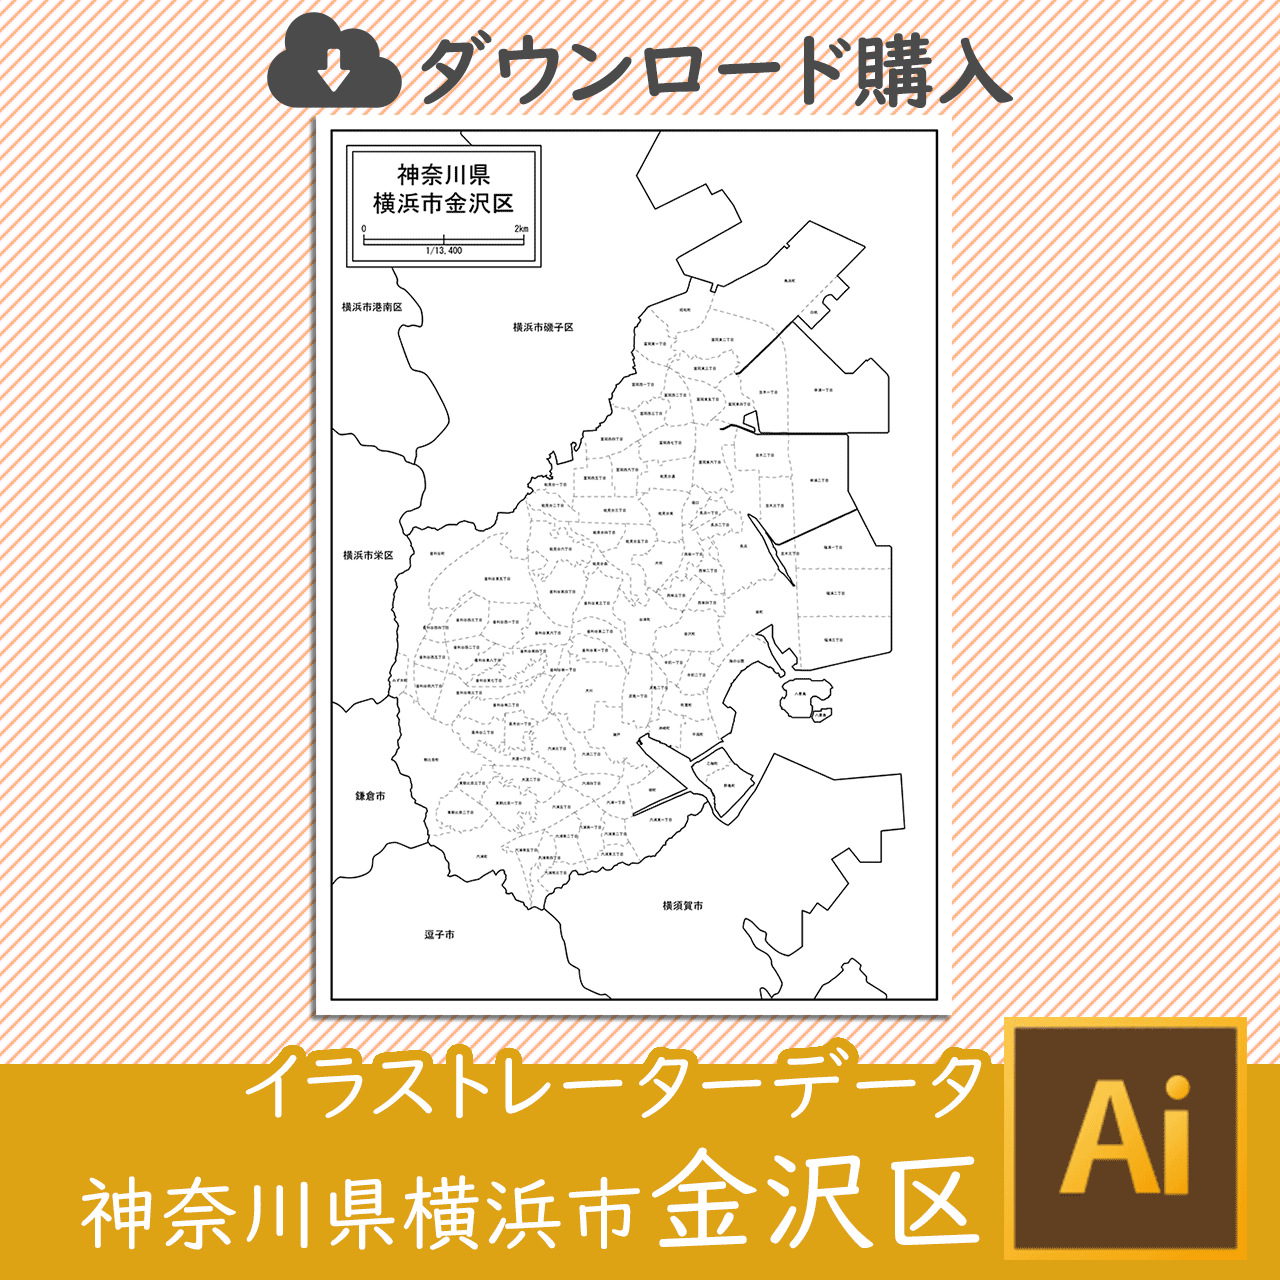 横浜市金沢区のaiデータのサムネイル画像